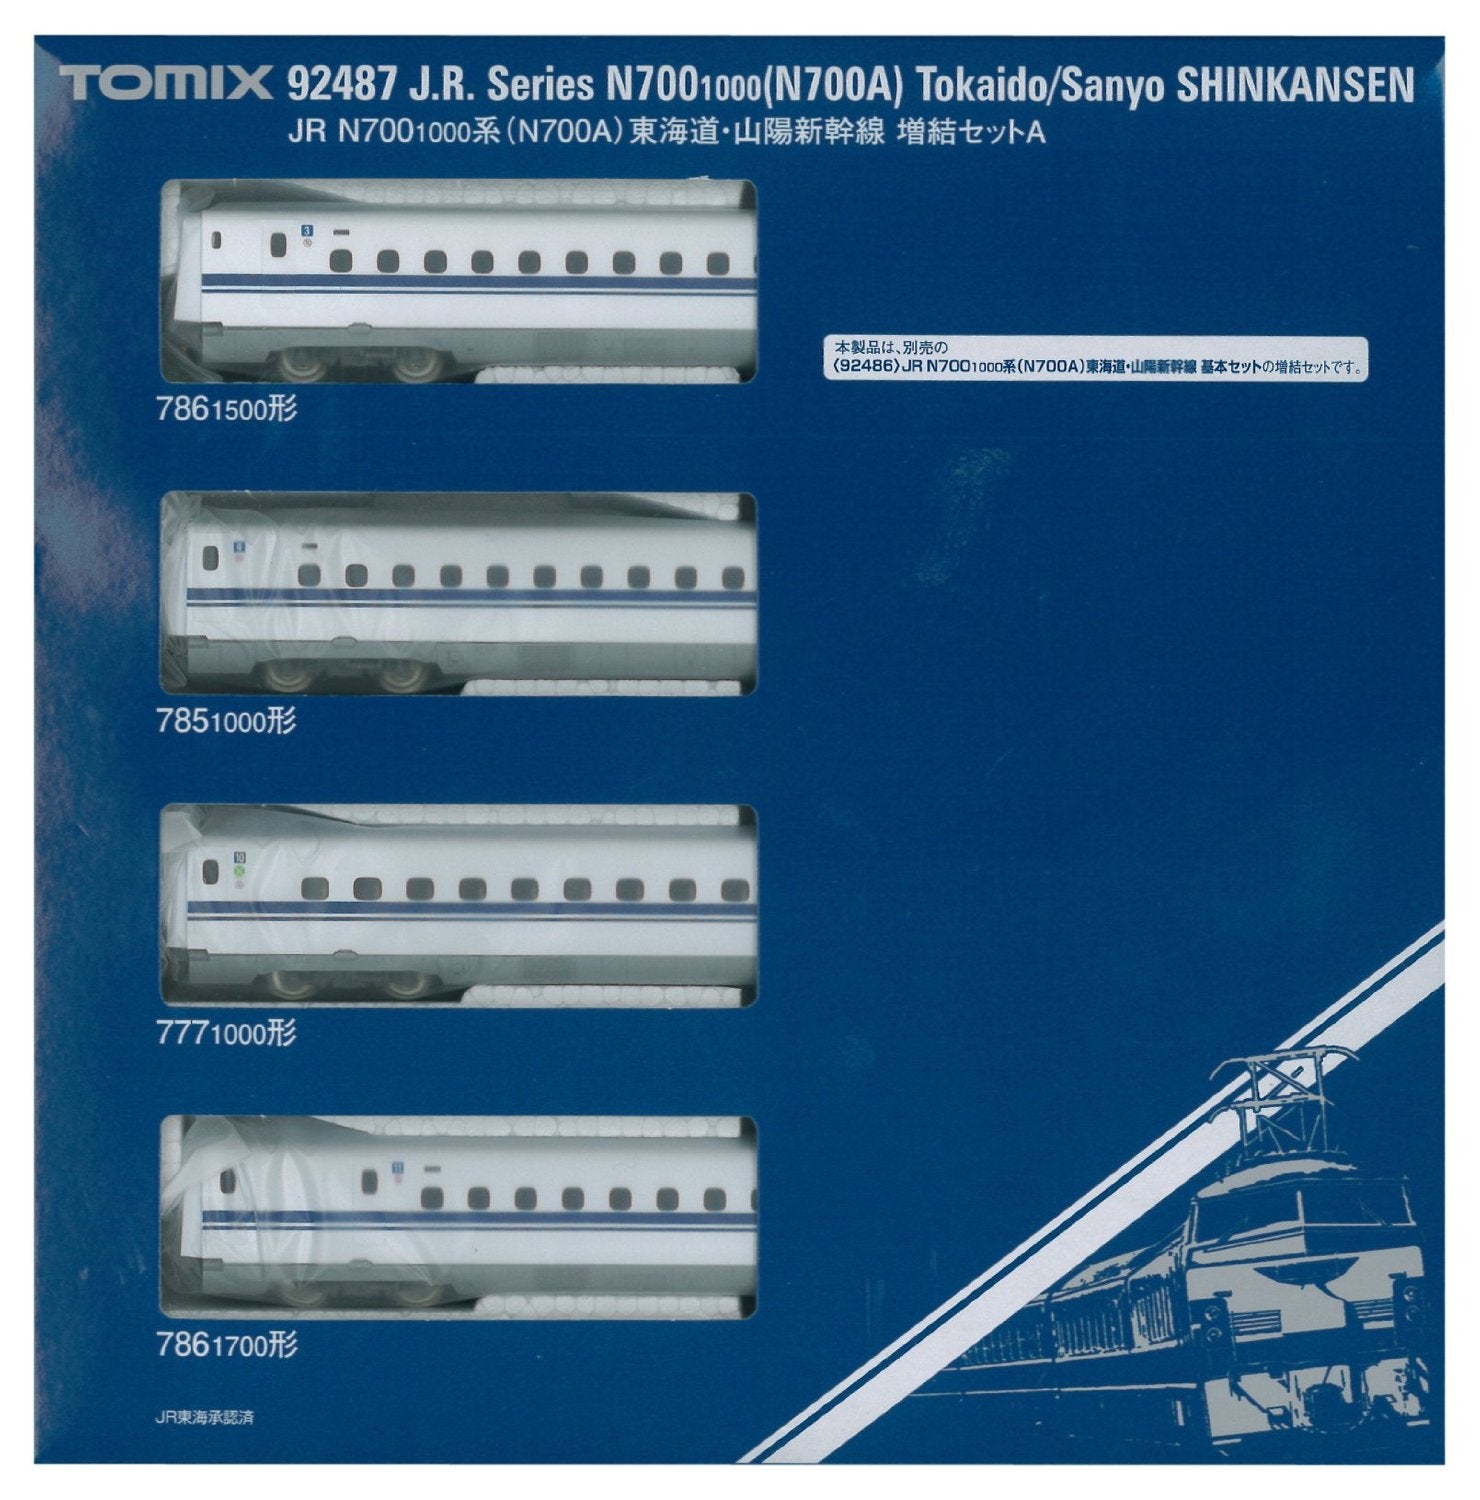 92487 J.R. Series N700-1000 N700A Tokaido/Sanyo Shinkansen N-Sca